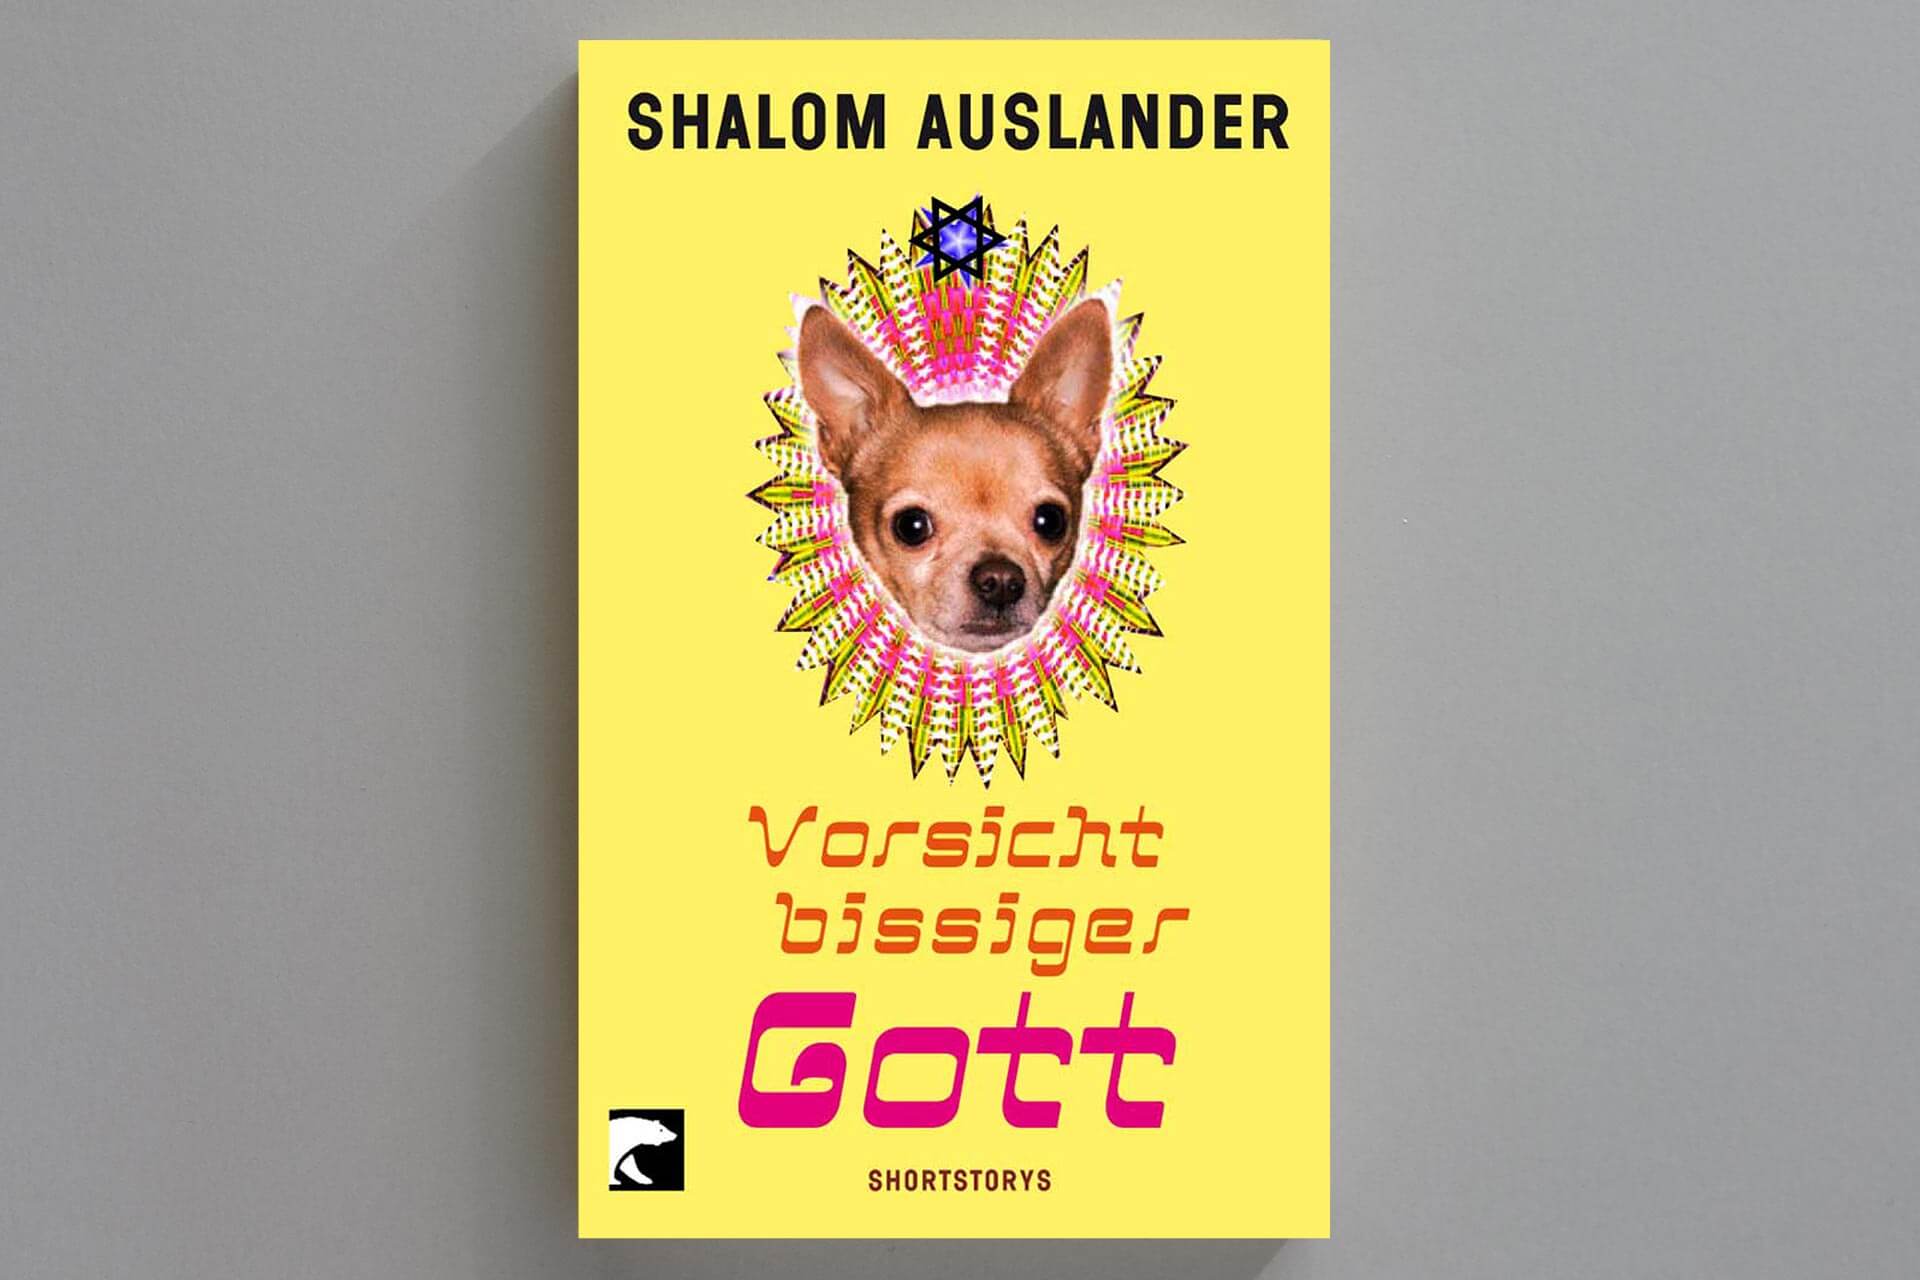 Abbildung einer Buchcover-Gestaltung für das Buch „Vorsicht bissiger Hund“ von Shalom Auslander